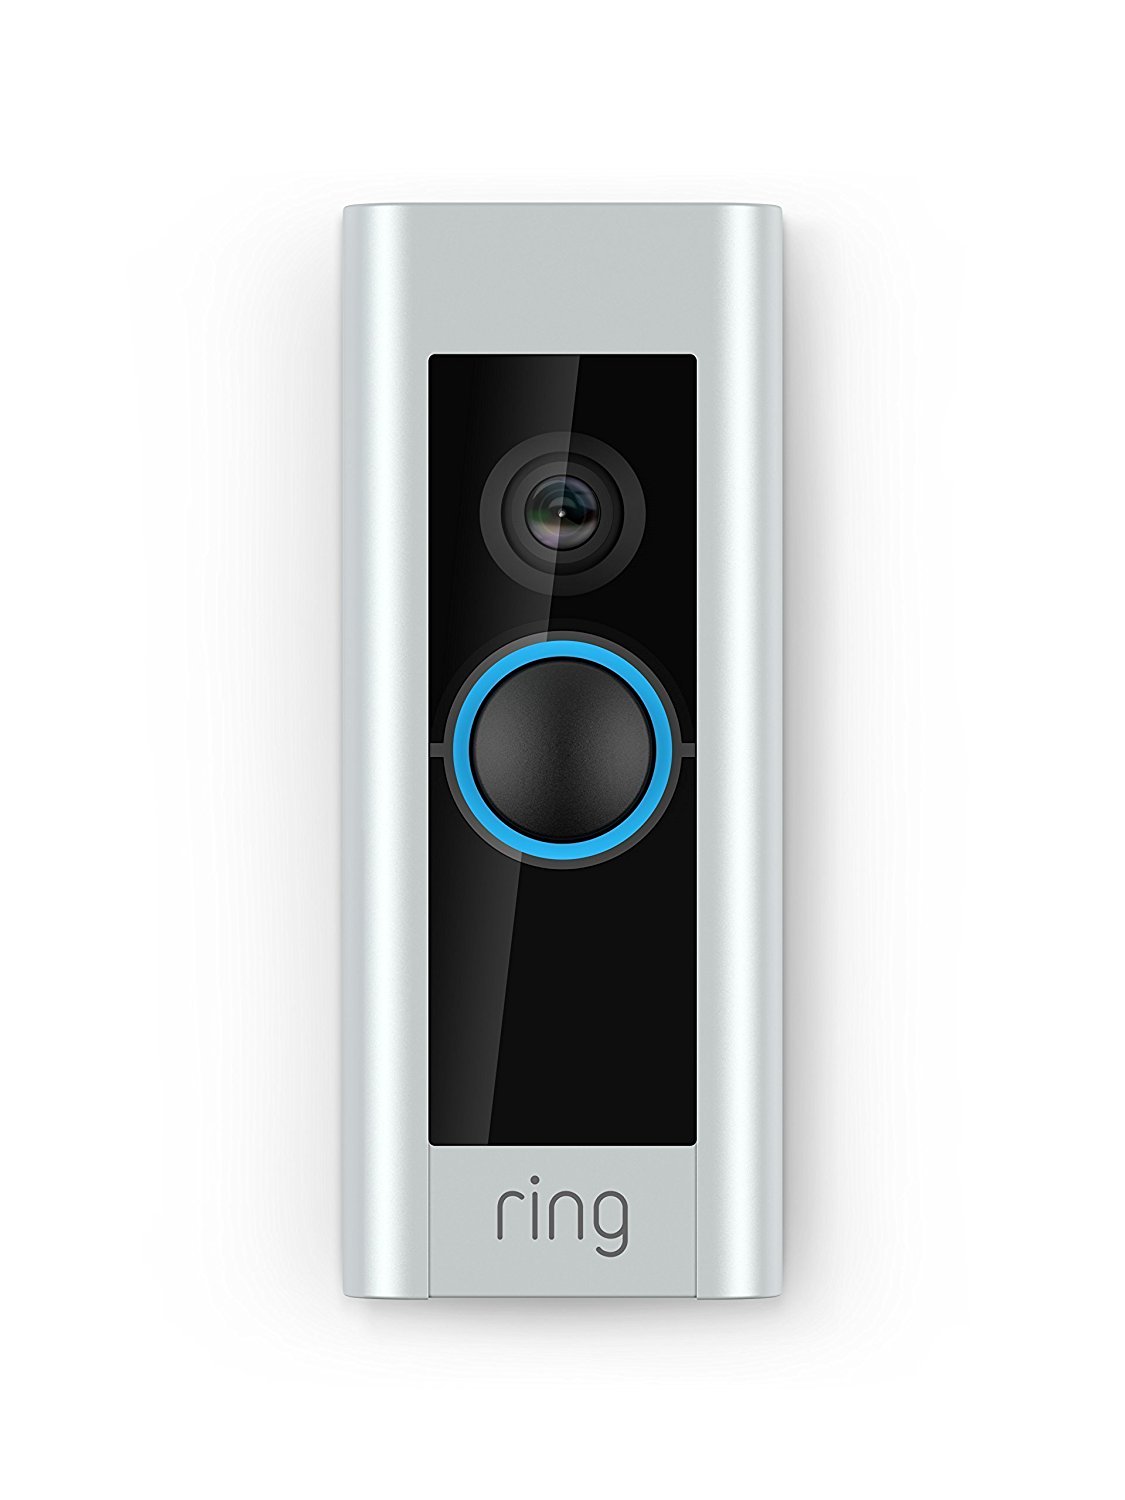 Costco members: Ring Video Doorbell Pro for $160